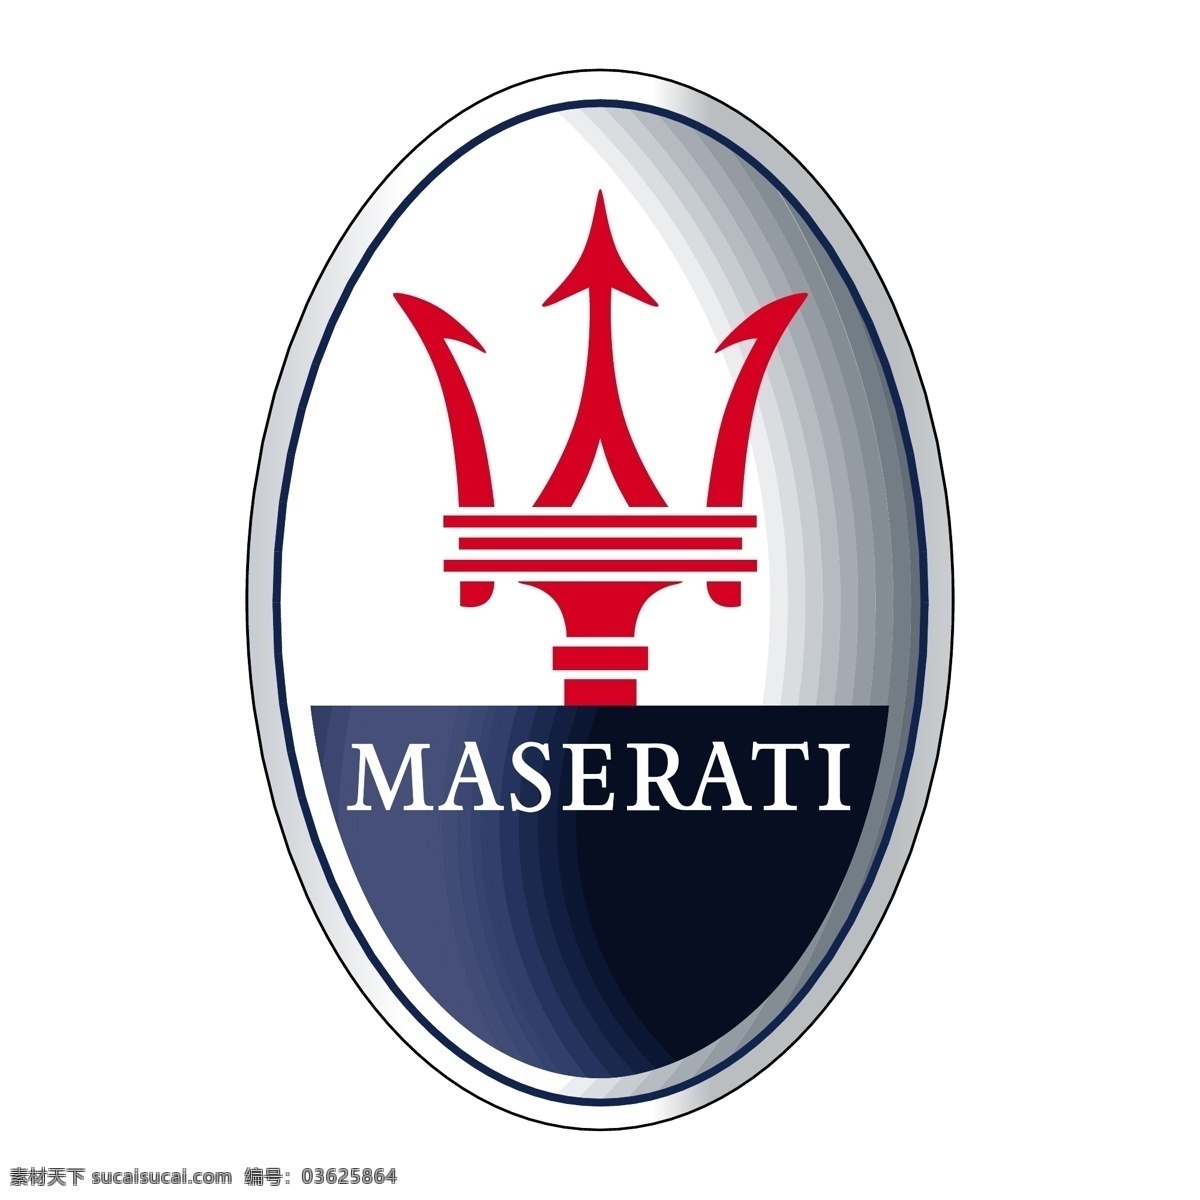 玛莎拉蒂 标志 maserati 矢量 汽车 标识标志图标 企业 logo 矢量图库